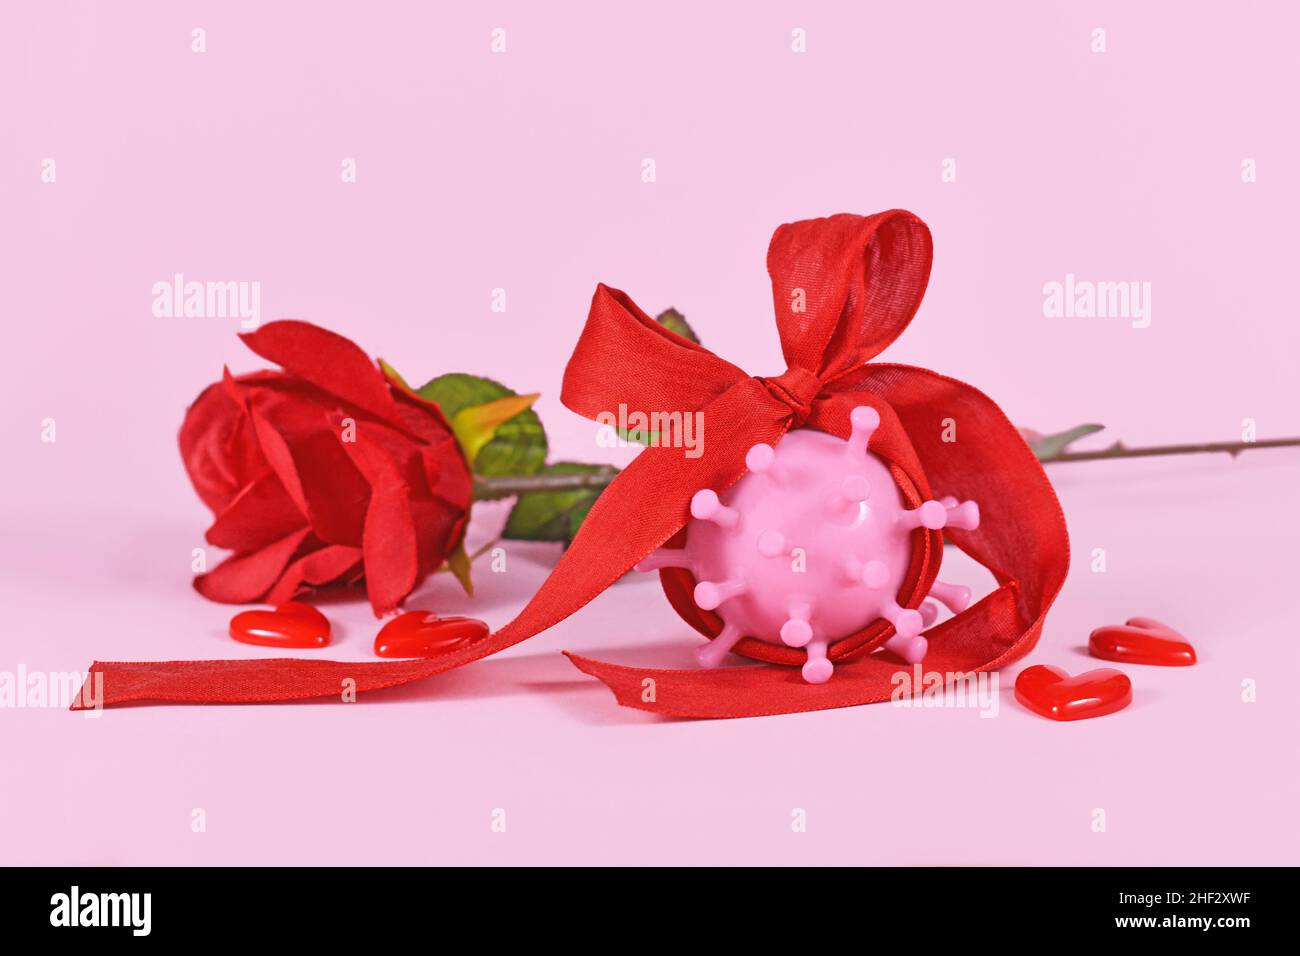 La Saint-Valentin pendant la pandémie de Corona concept avec le modèle de virus enveloppé dans le ruban et rose sur fond rose Banque D'Images